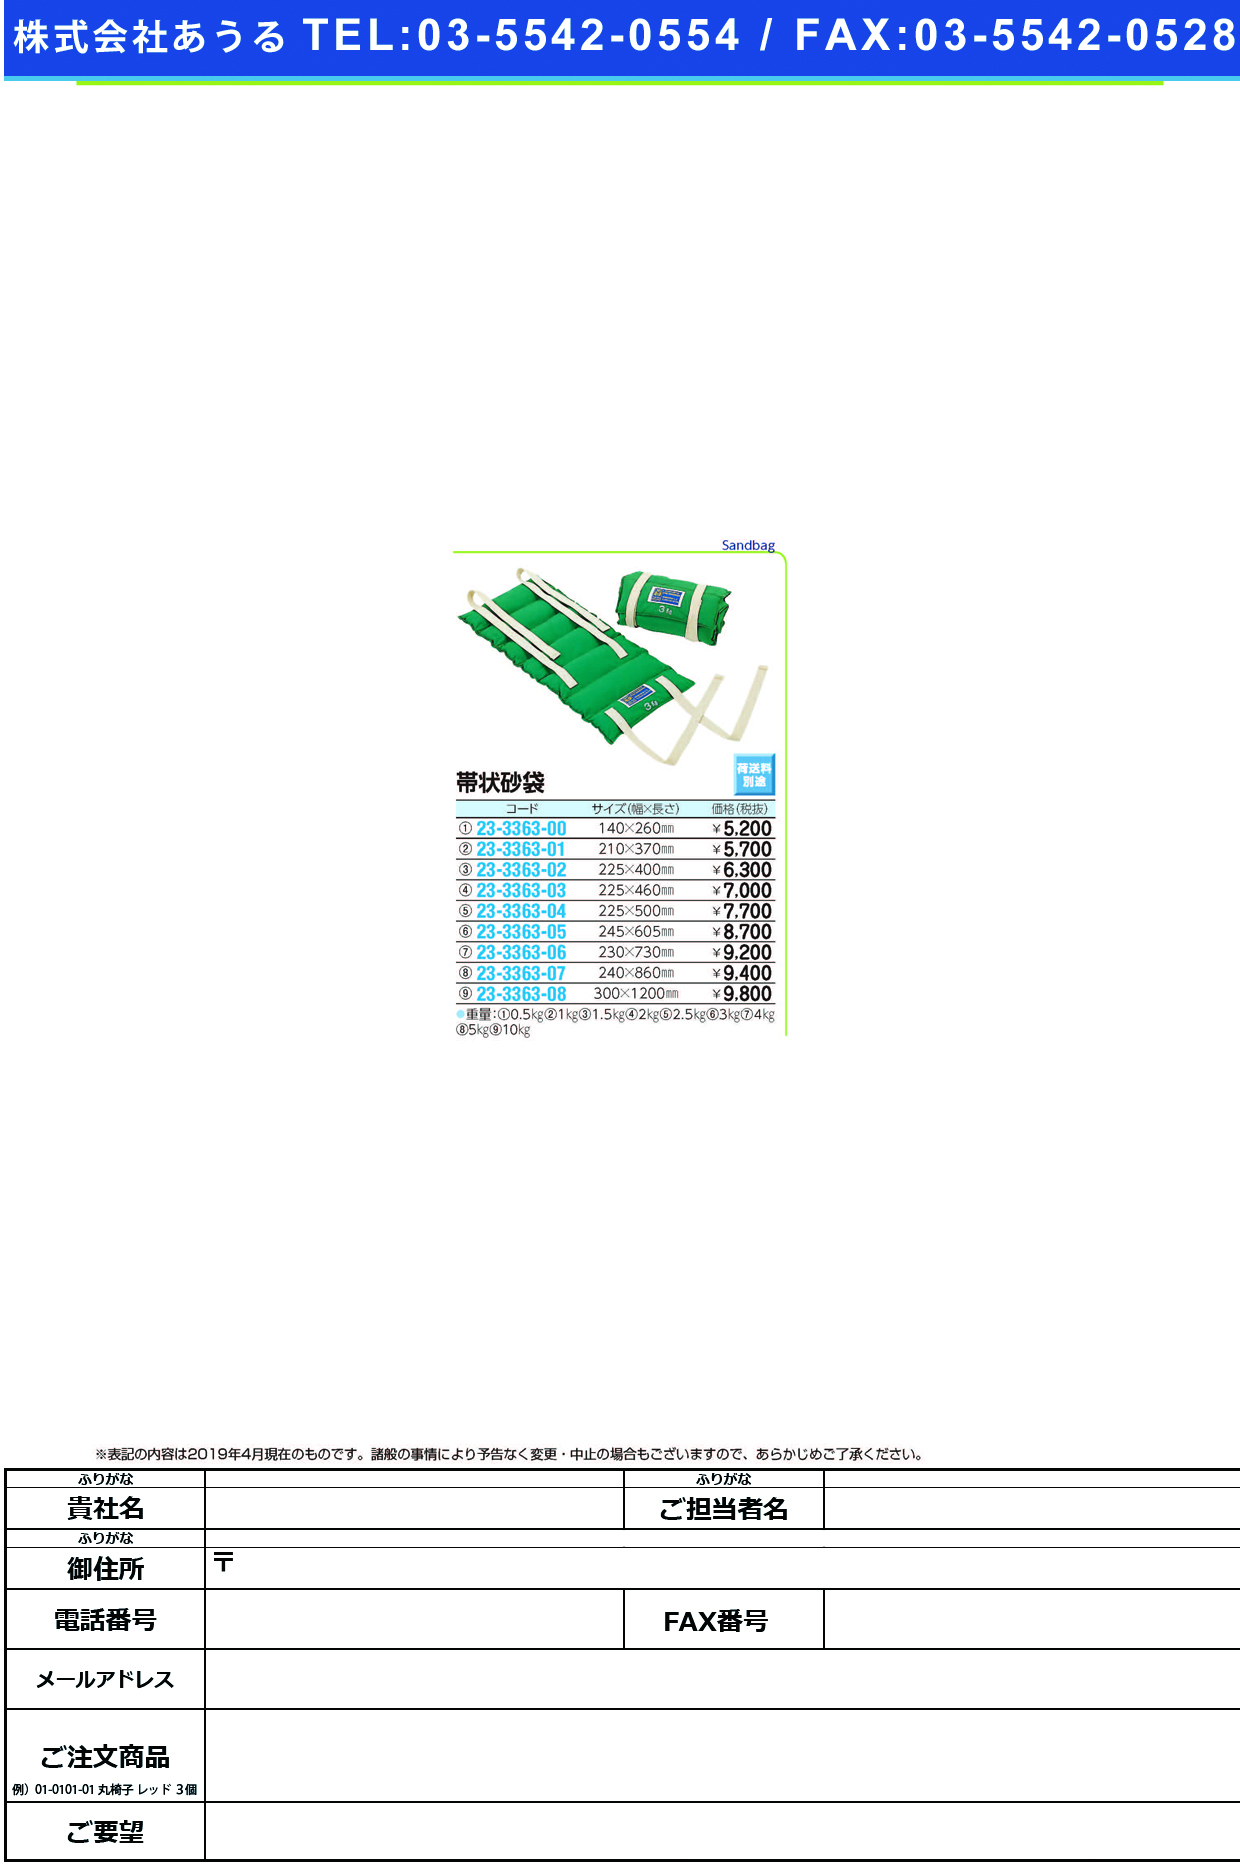 (23-3363-06)帯状砂袋 R-526(4.0KG) ｵﾋﾞｼﾞｮｳｽﾅﾌﾞｸﾛ【1個単位】【2019年カタログ商品】